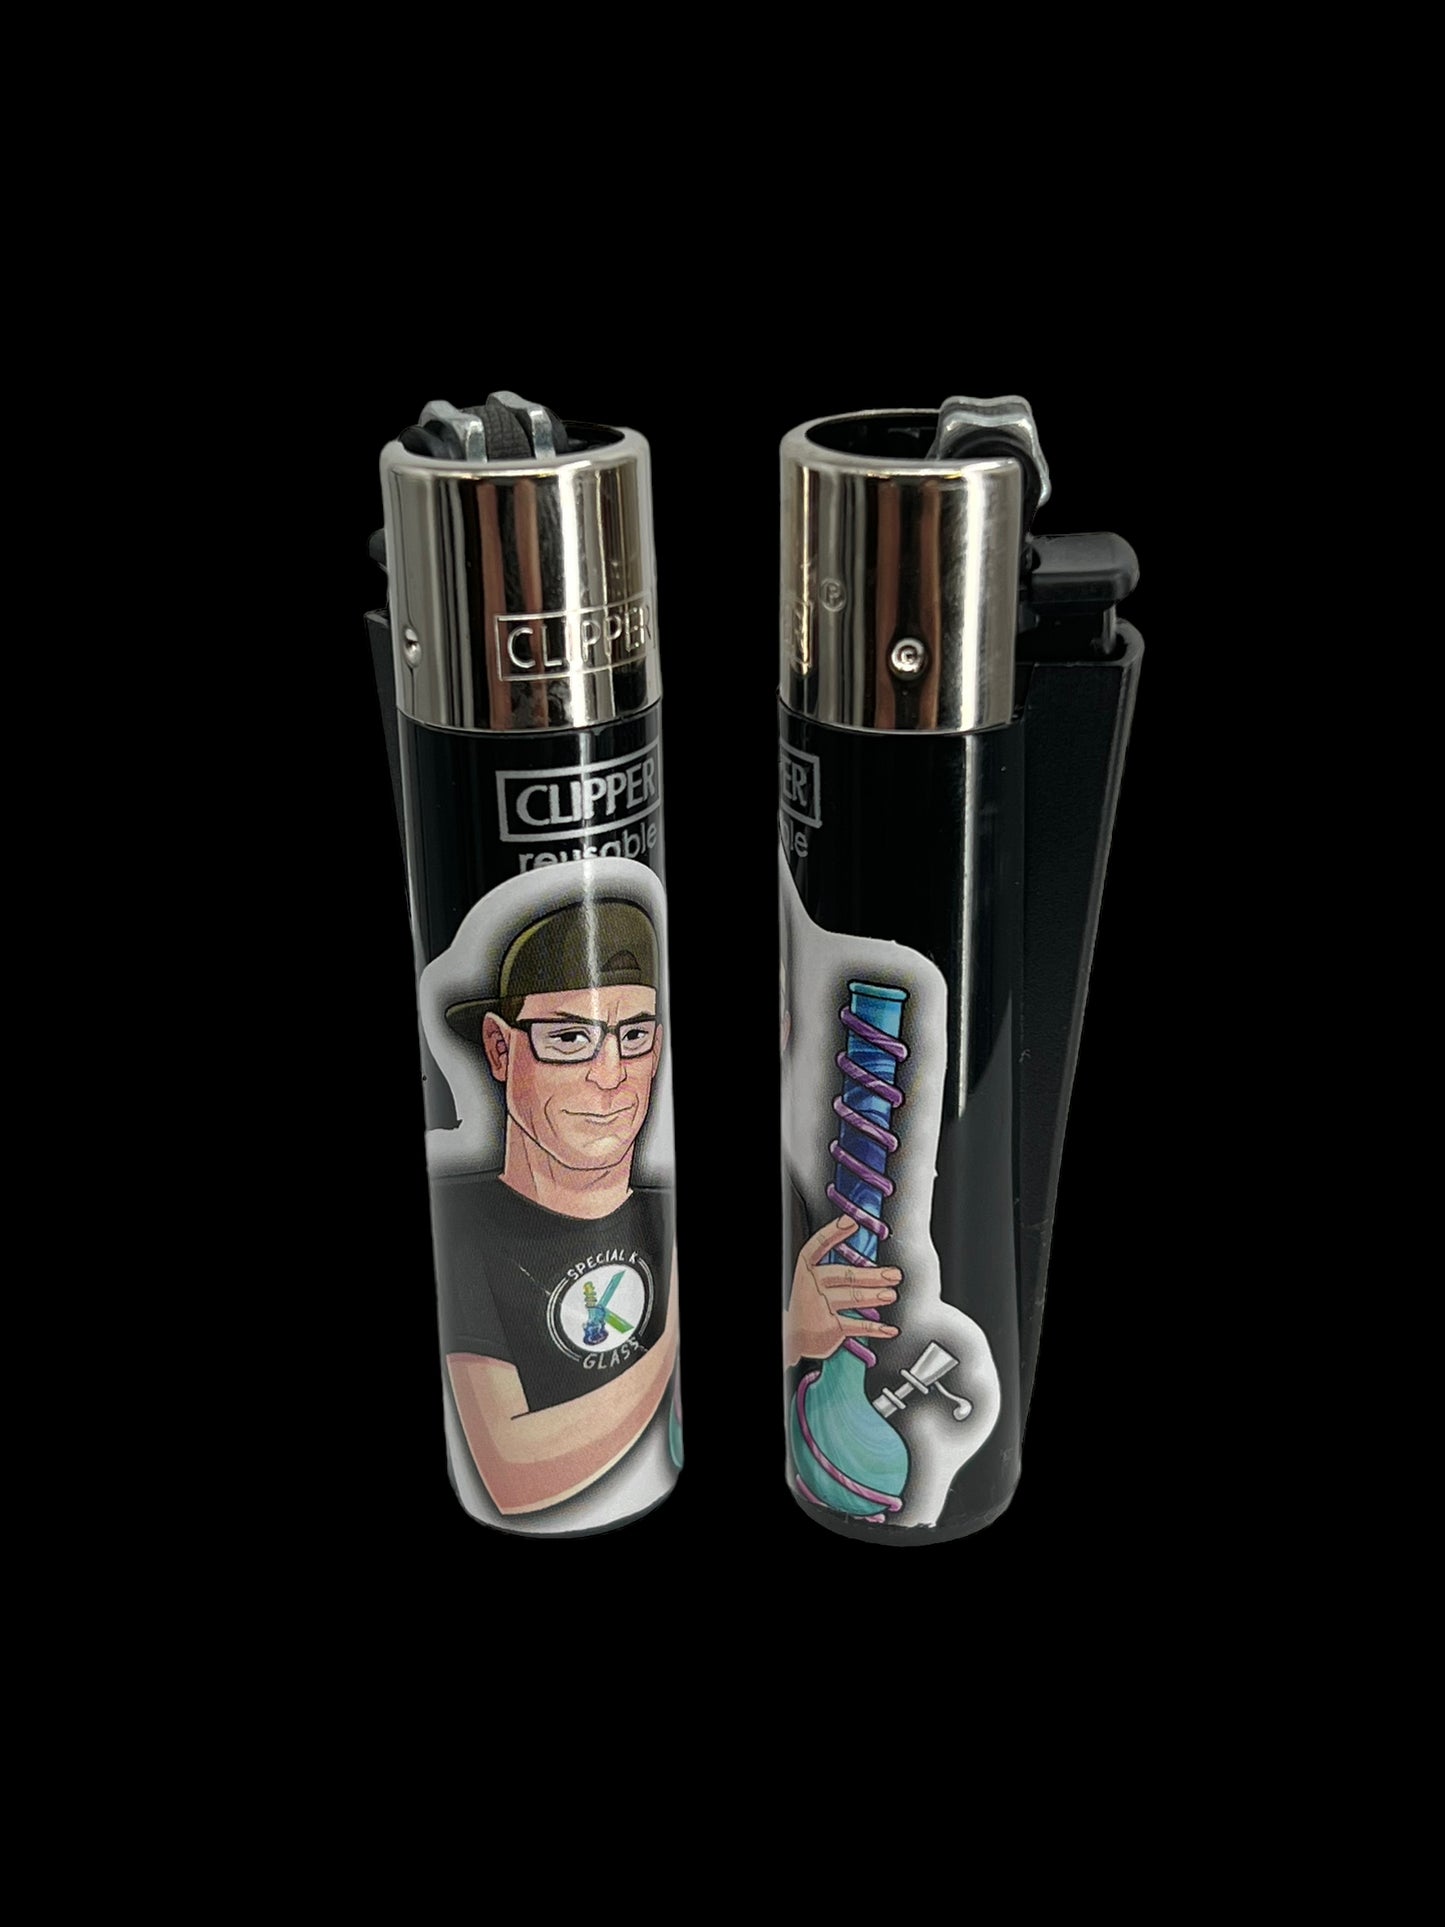 Special K Clipper Lighter - Black